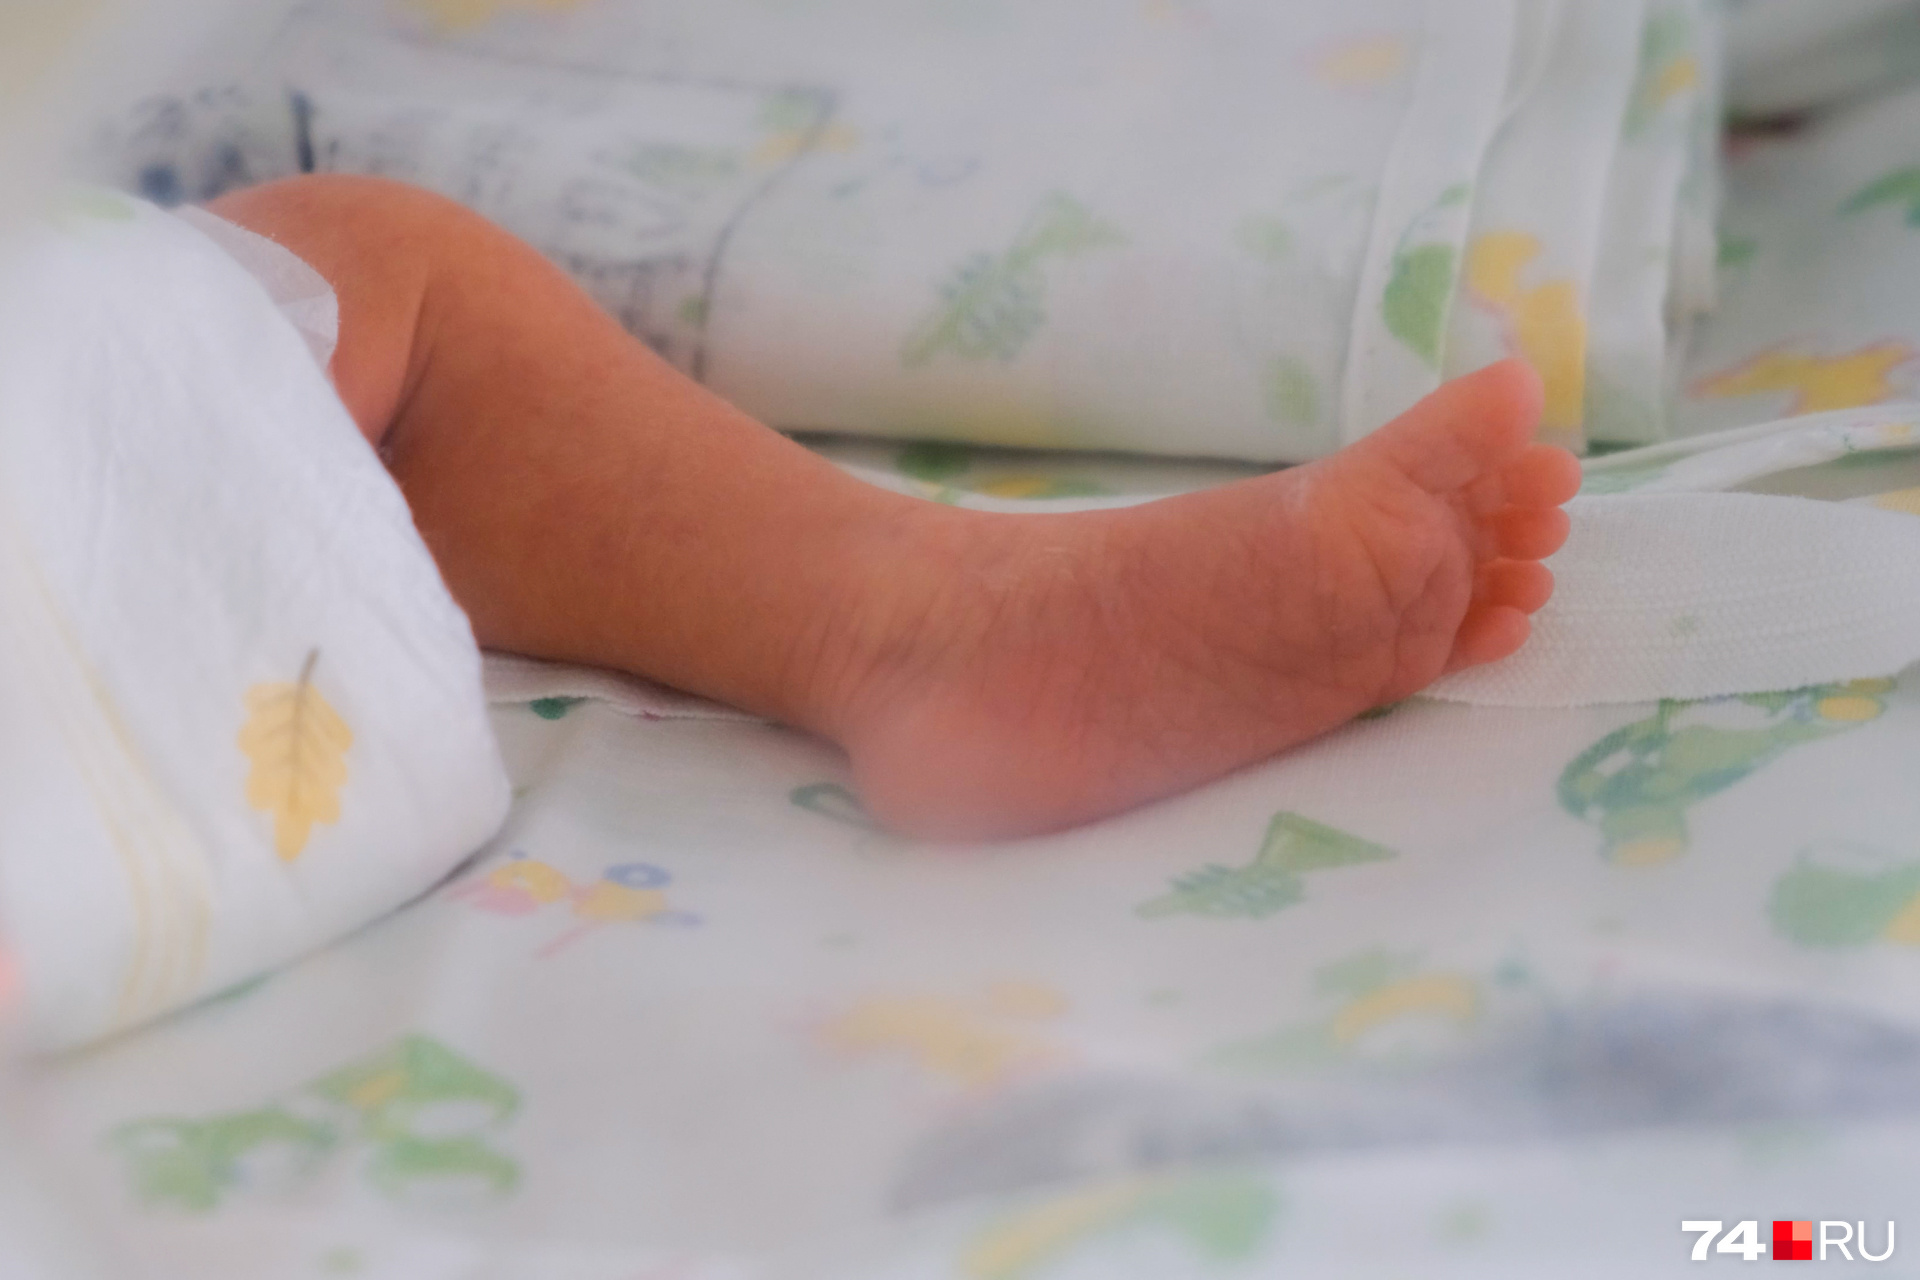 Новорожденный погиб из-за ошибки акушеров в Чите